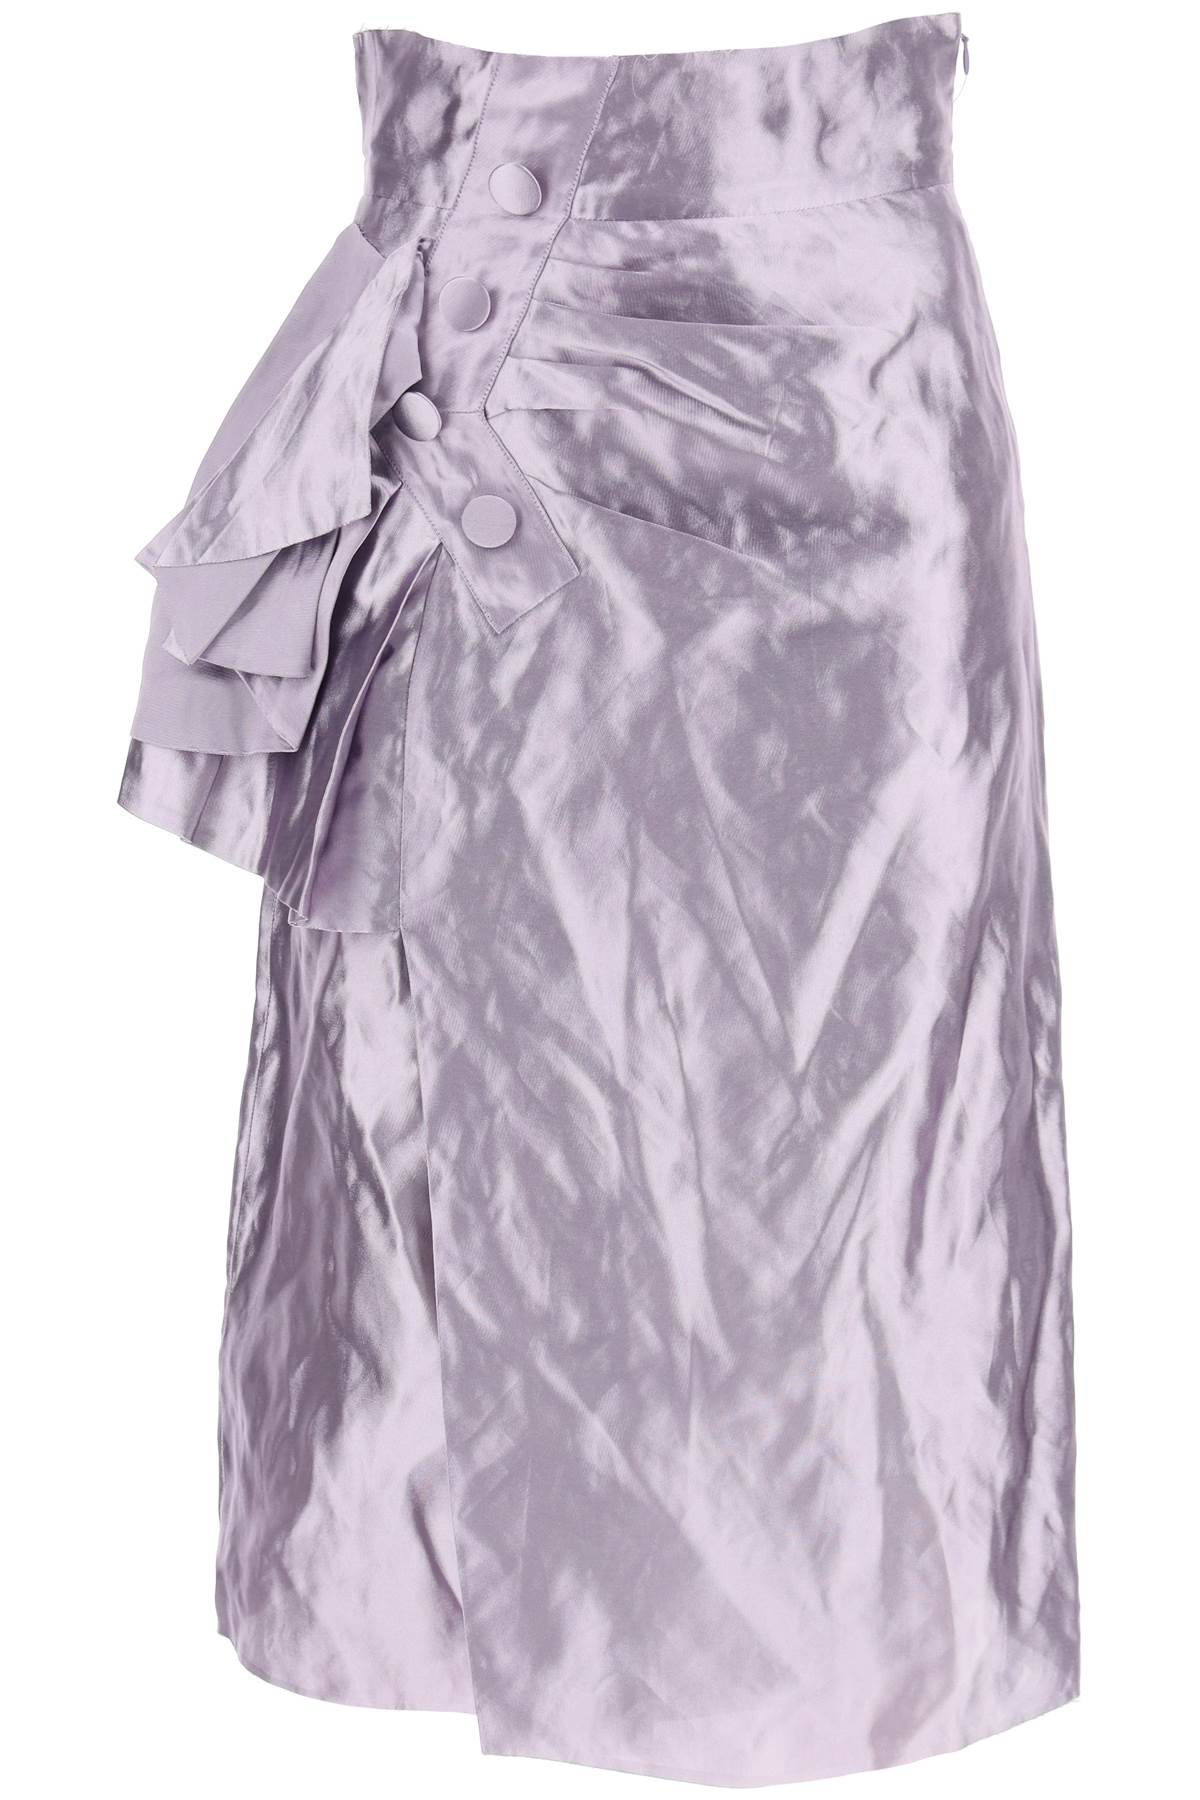 Maison margiela "metallic satin midi wrap skirt with-0